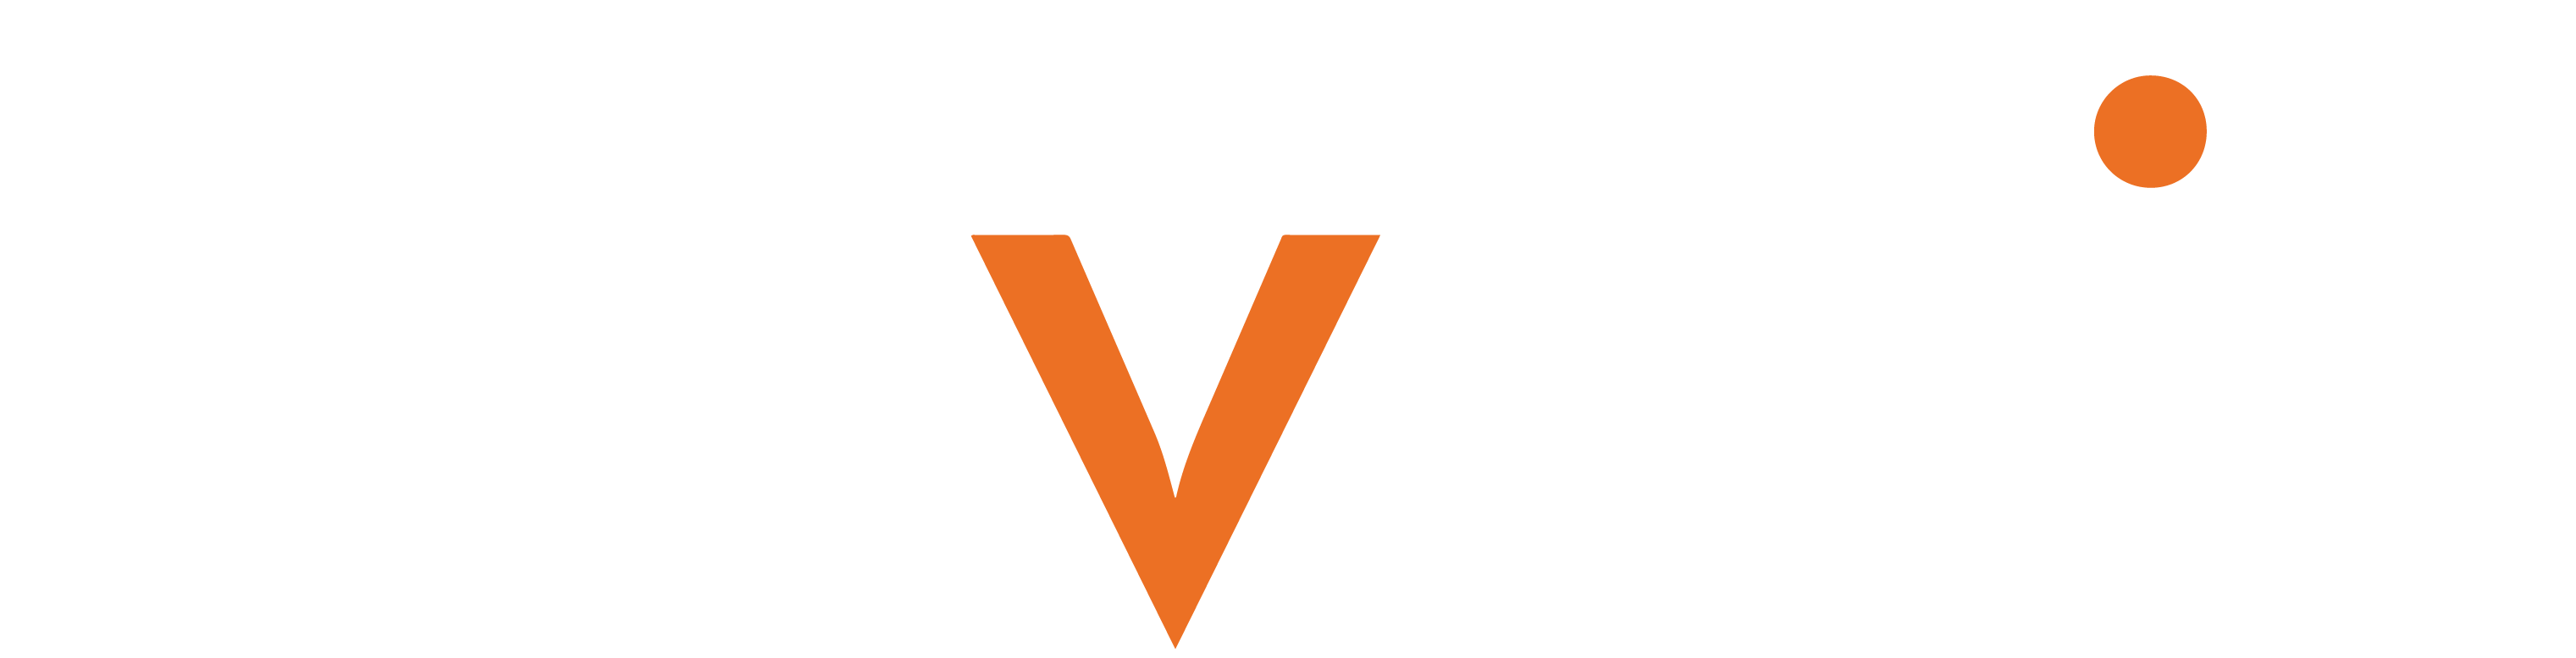 Novosit Logo